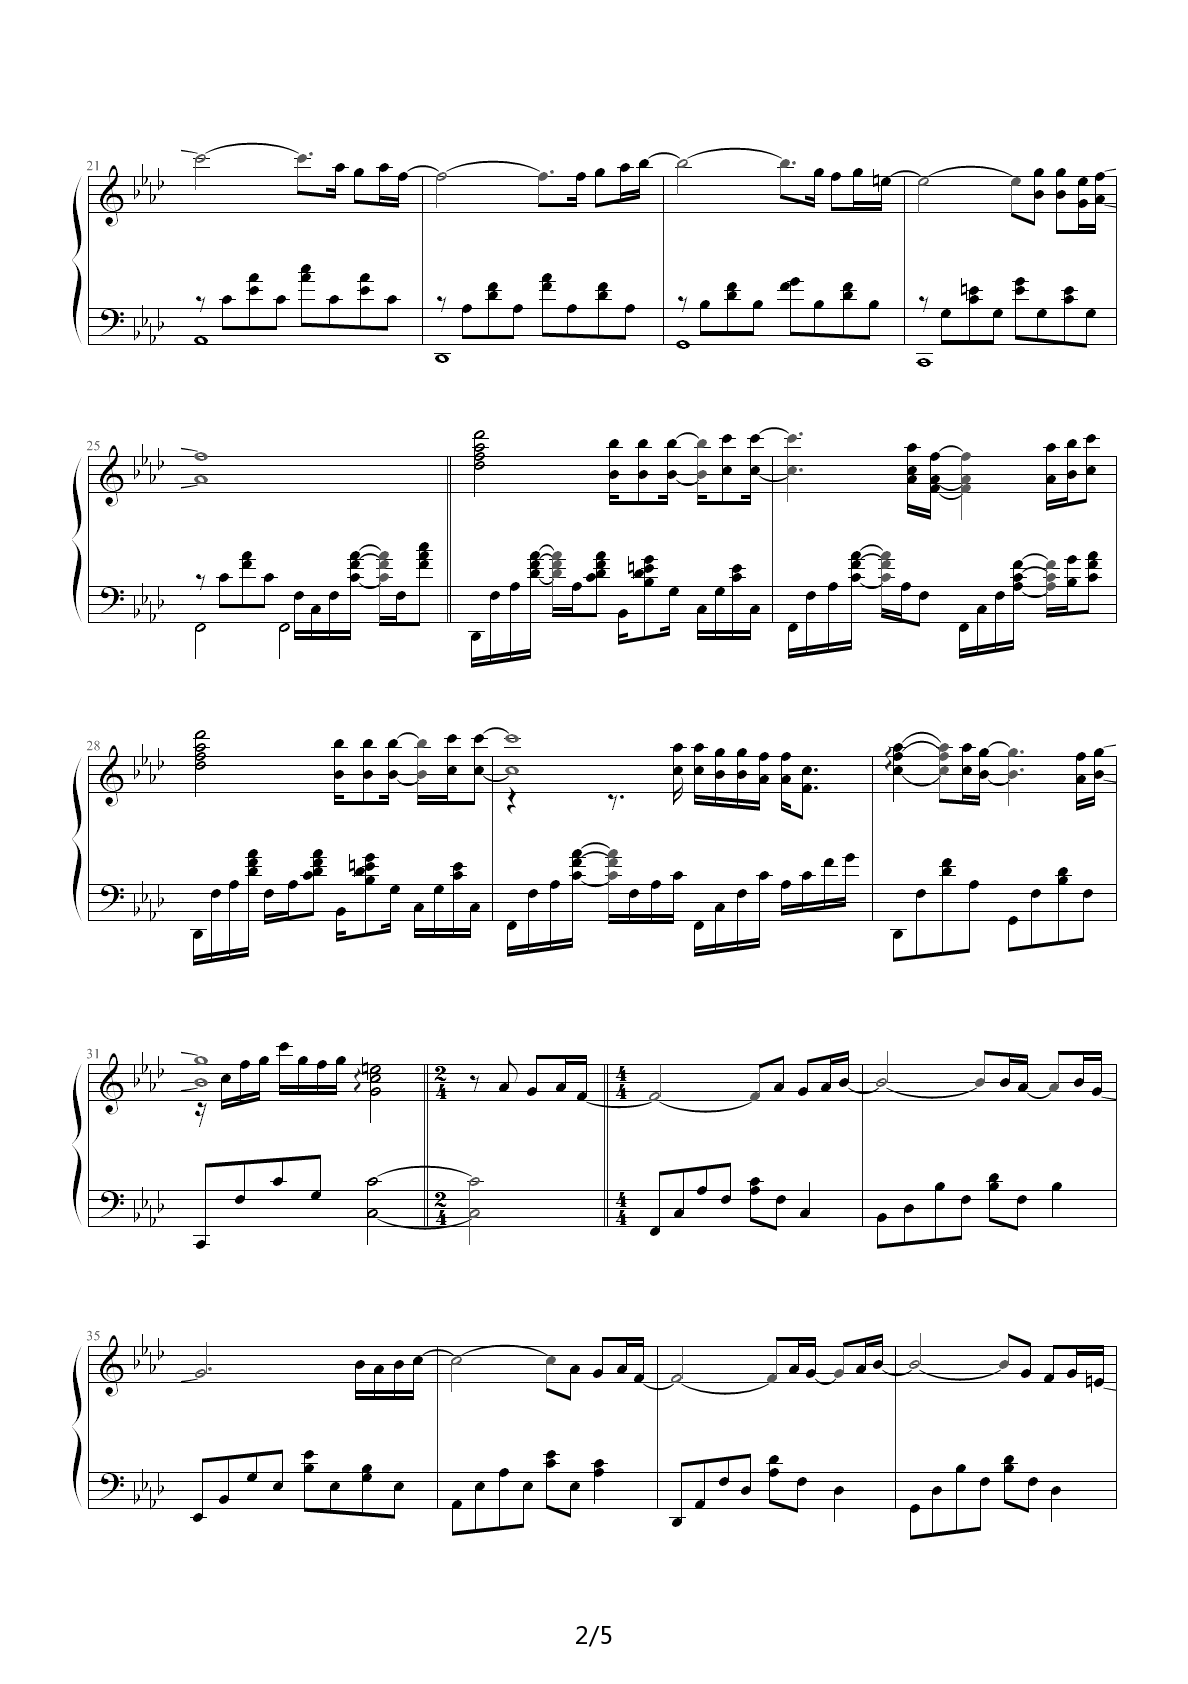 MAGIC BOULEVARD钢琴谱|MAGIC BOULEVARD最新钢琴谱|MAGIC BOULEVARD钢琴谱下载